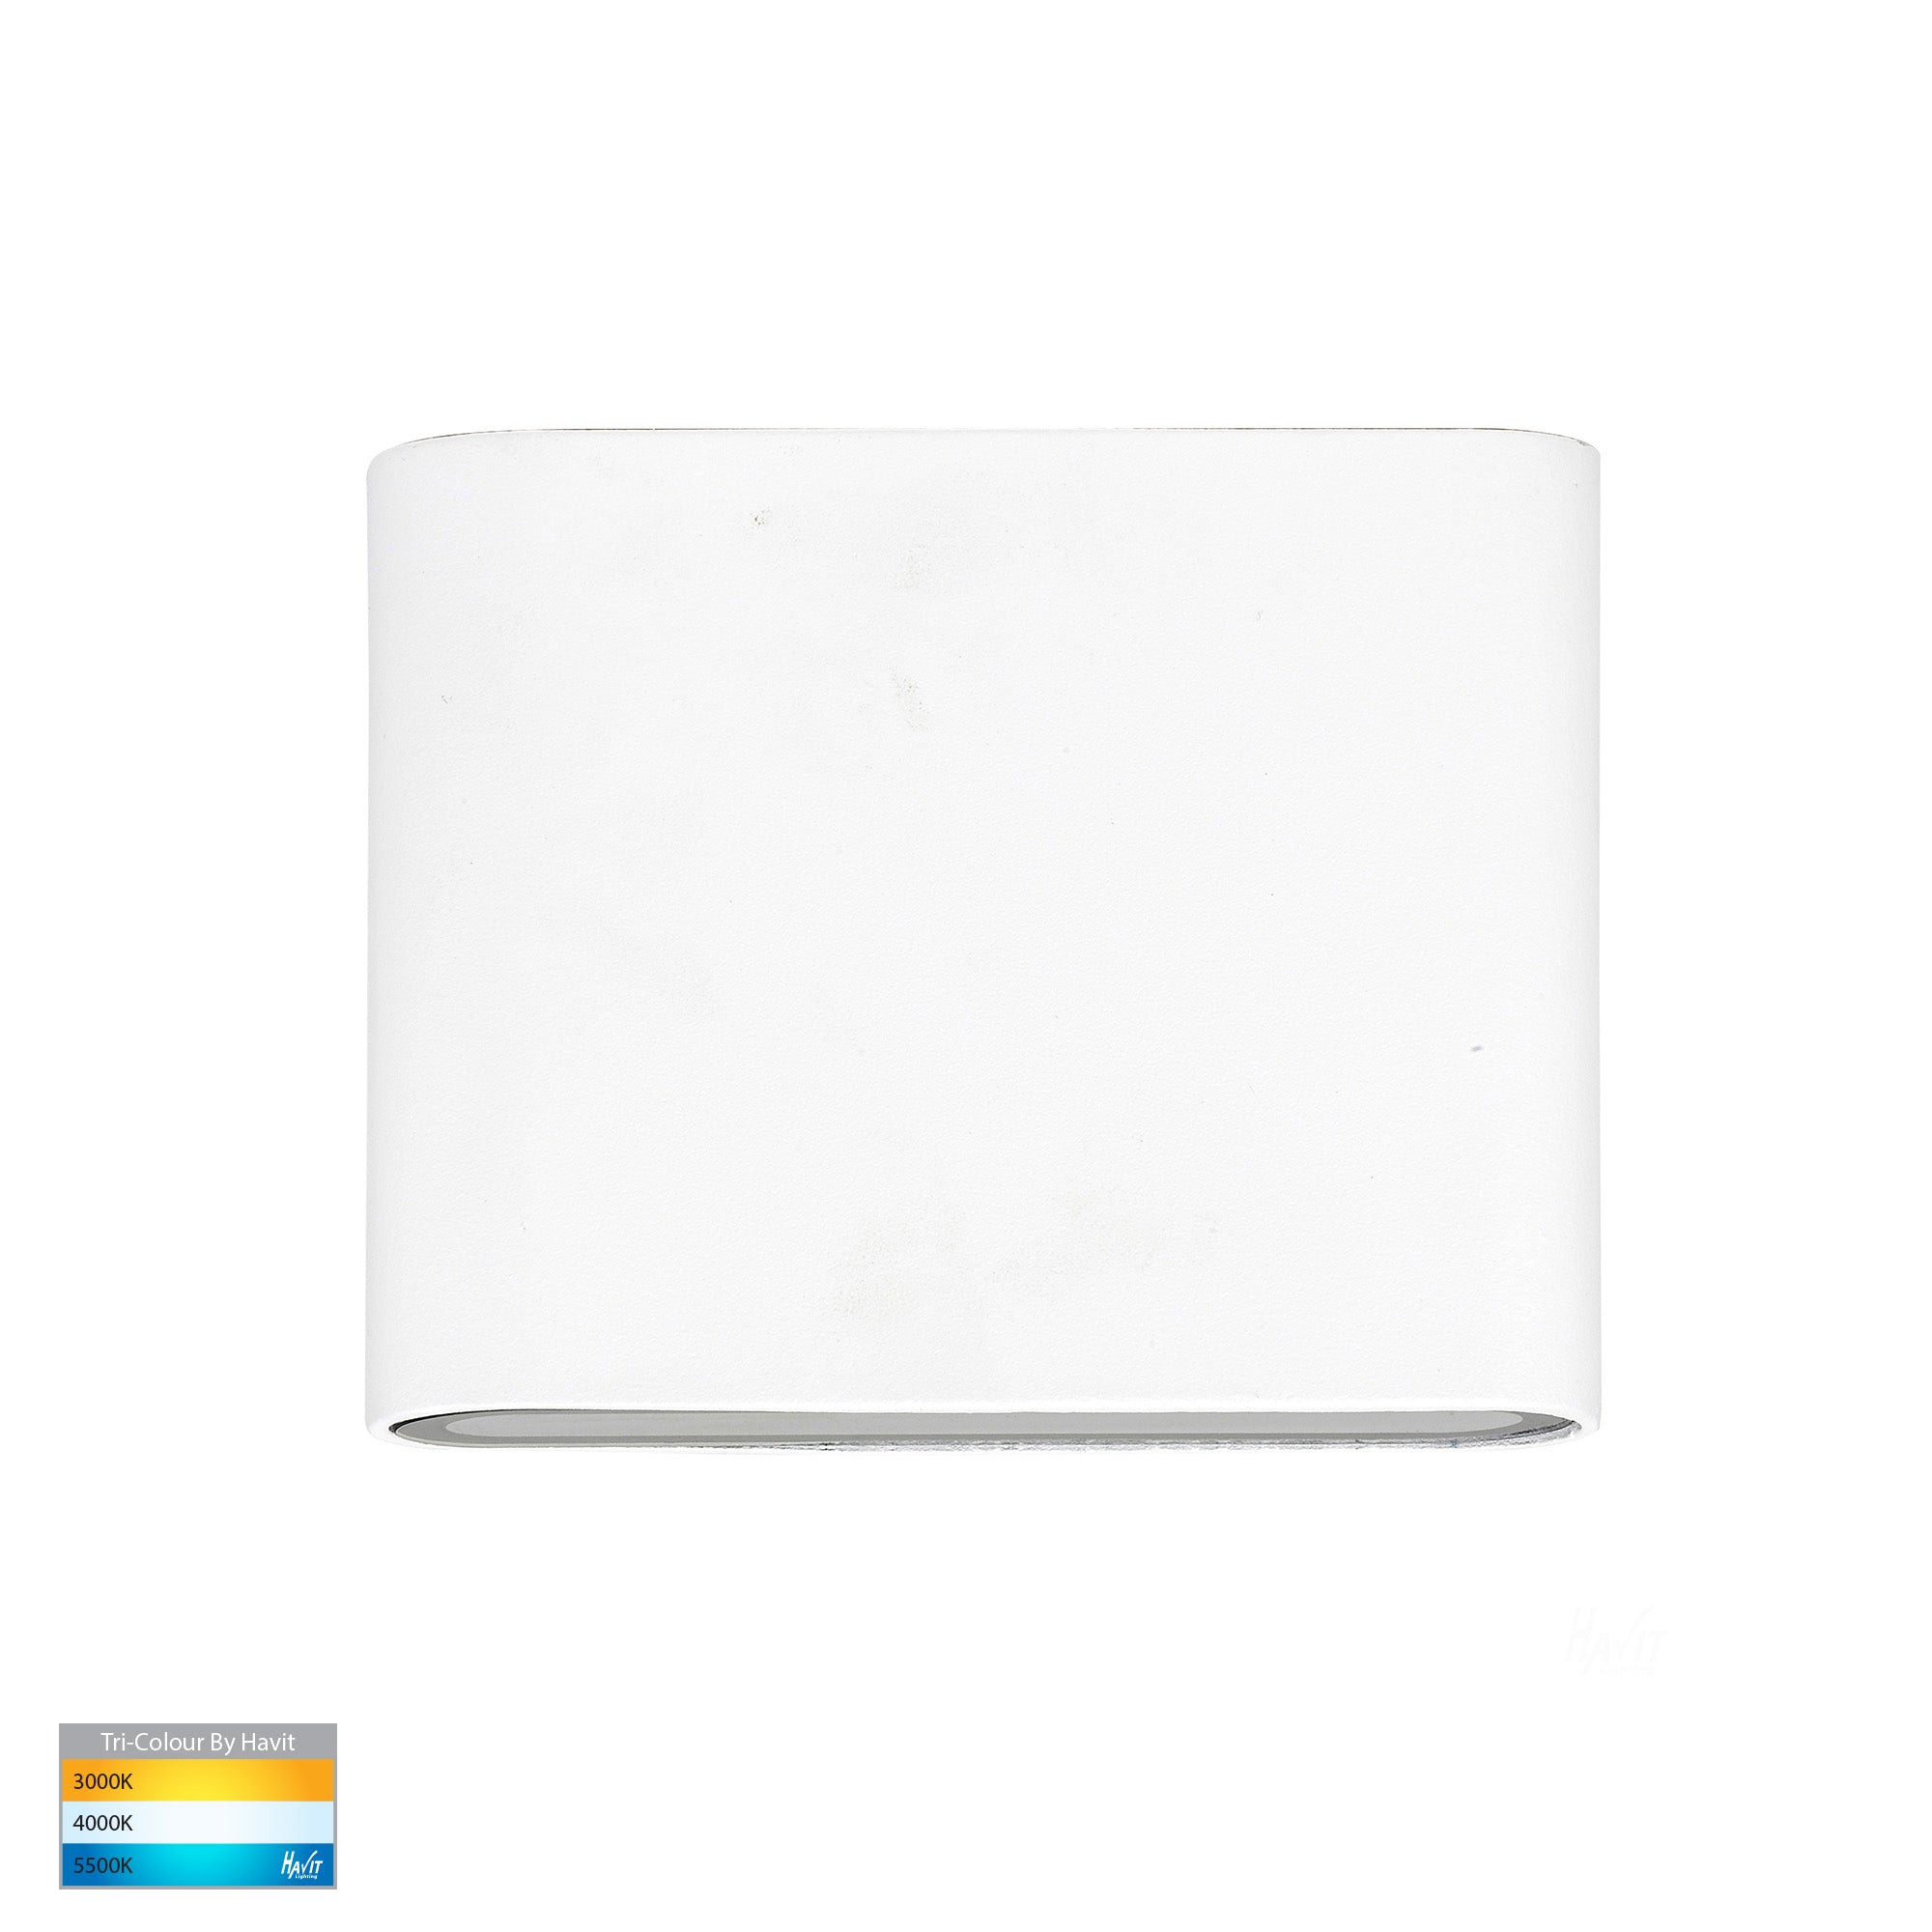 HV3642T-WHT - Lisse White Up & Down TRI Colour LED Wall Light